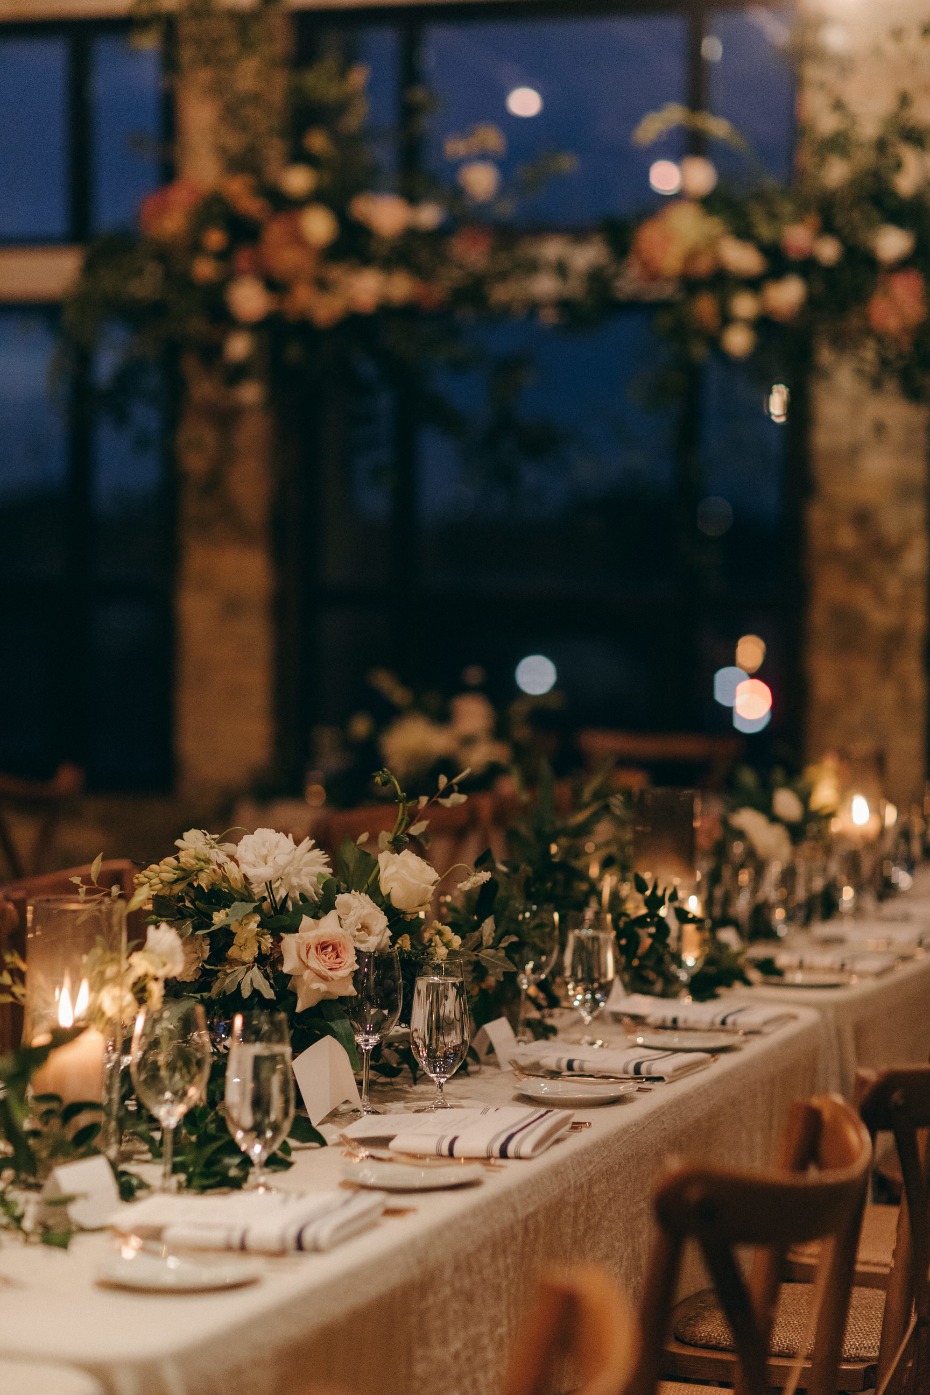 Romantic dinner/ceremony